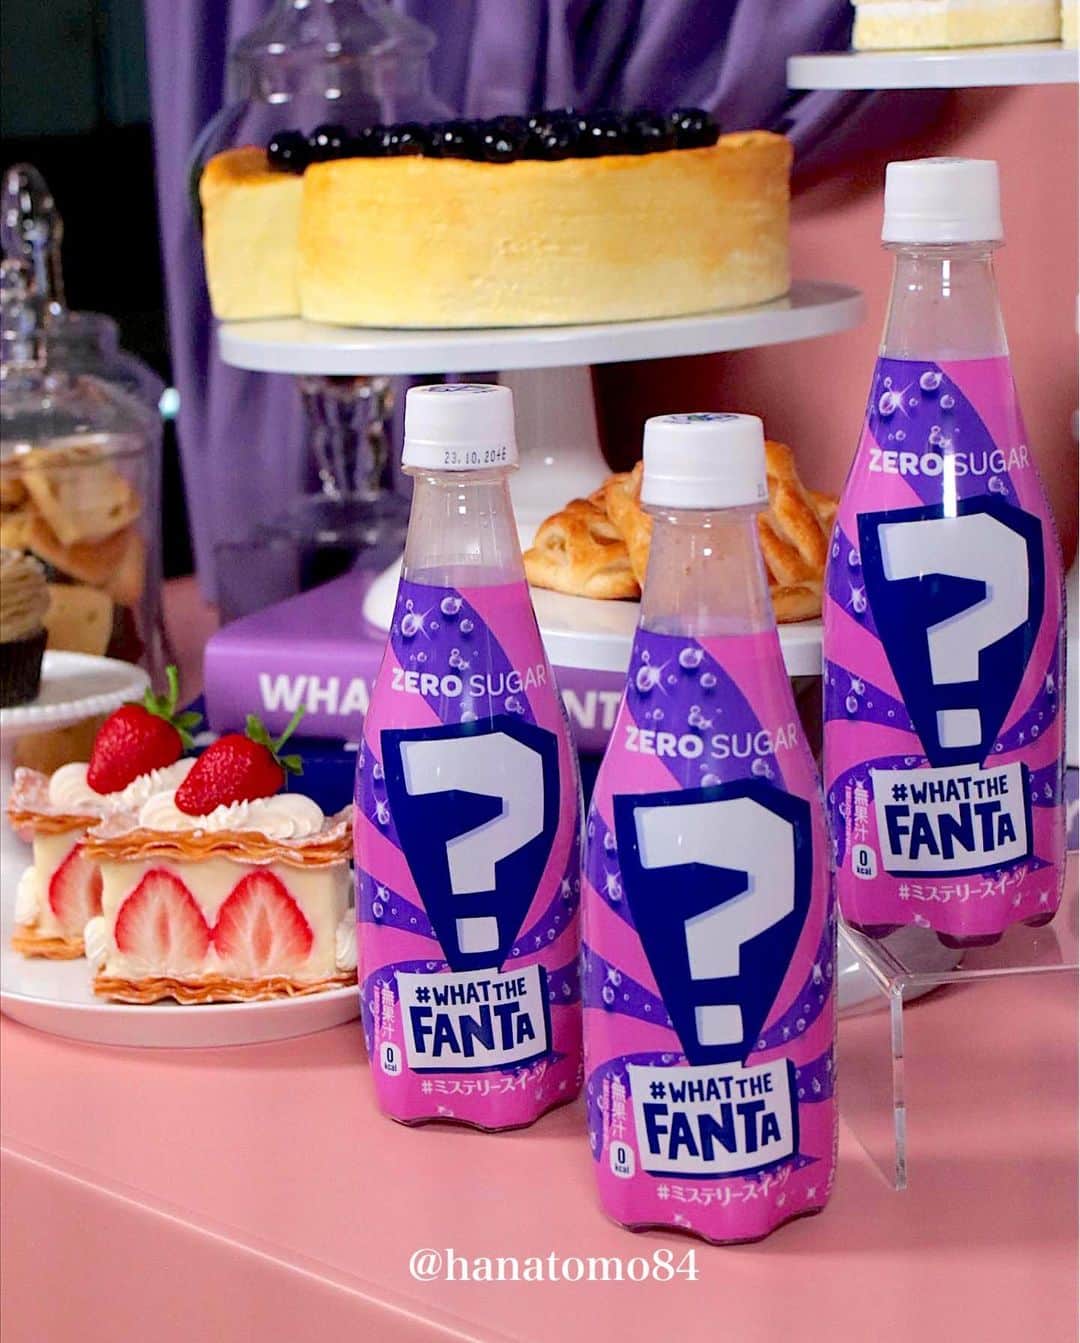 はなとものインスタグラム：「. . . 【 #ファンタミステリースイーツ @fanta_japan】  日本コカ･コーラのフルーツ炭酸飲料カテゴリーNo.1「ファンタ」ブランドから、昨年多くの話題となった「＃ What The Fanta」シリーズ第2弾となる「ファンタ ミステリースイーツ」を、2023年6月12日(月)より期間限定で新発売します。  「ファンタ」のミステリーフレーバーは「＃ What The Fanta」シリーズとして、2018年より東南アジアで発売を開始。ヨーロッパではSNSを中心に話題を席巻し、多くの国と地域で2021年に最も売れた「ファンタ」フレーバーとなりました！  そして昨年、ついに日本でも「ファンタ ミステリーブルー」が期間限定で販売され大人気に！  個人的にはファンタが大好きで、中でもファンタグレープは特にお気に入り。そんなファンタから未知なるフレーバーが出ることはファンにとってこの上ない喜びです。 今回の「ファンタ ミステリースイーツ」は、「あるスイーツの味」をイメージして作られたそう。  ちなみに6月12日(月)〜6月25日(日)までは、何味のフレーバーか言及しないそうです。  フレーバーの正解は6月26日(月)に放映予定の、ABEMAの人気番組「声優と夜あそび 繋（コネクト）」と「ファンタ」とのコラボレーション企画内で発表するって。  また、期間中に飲んで味を当てる「ファンタ ミステリースイーツ #味当てチャレンジ キャンペーン」を実施。※パッケージに記載されている二次元コードを読み取ってね。  家族や友人と一緒に味を予想しながら「ファンタ ミステリースイーツ」をぜひ堪能してみて！ ✴︎———✴︎———✴︎———✴︎———✴︎———✴︎———✴︎———✴︎——✴︎  #sponsored #ファンタ #新製品 #FANTA #コカコーラ #ファンタミステリー #炭酸飲料 #全国スイーツ #コンビニドリンク #コカコーラ部 #スイーツ #スイーツ部 #ファンタオレンジ #ファンタグレープ #デザート #炭酸飲料大好き #おうちカフェ」